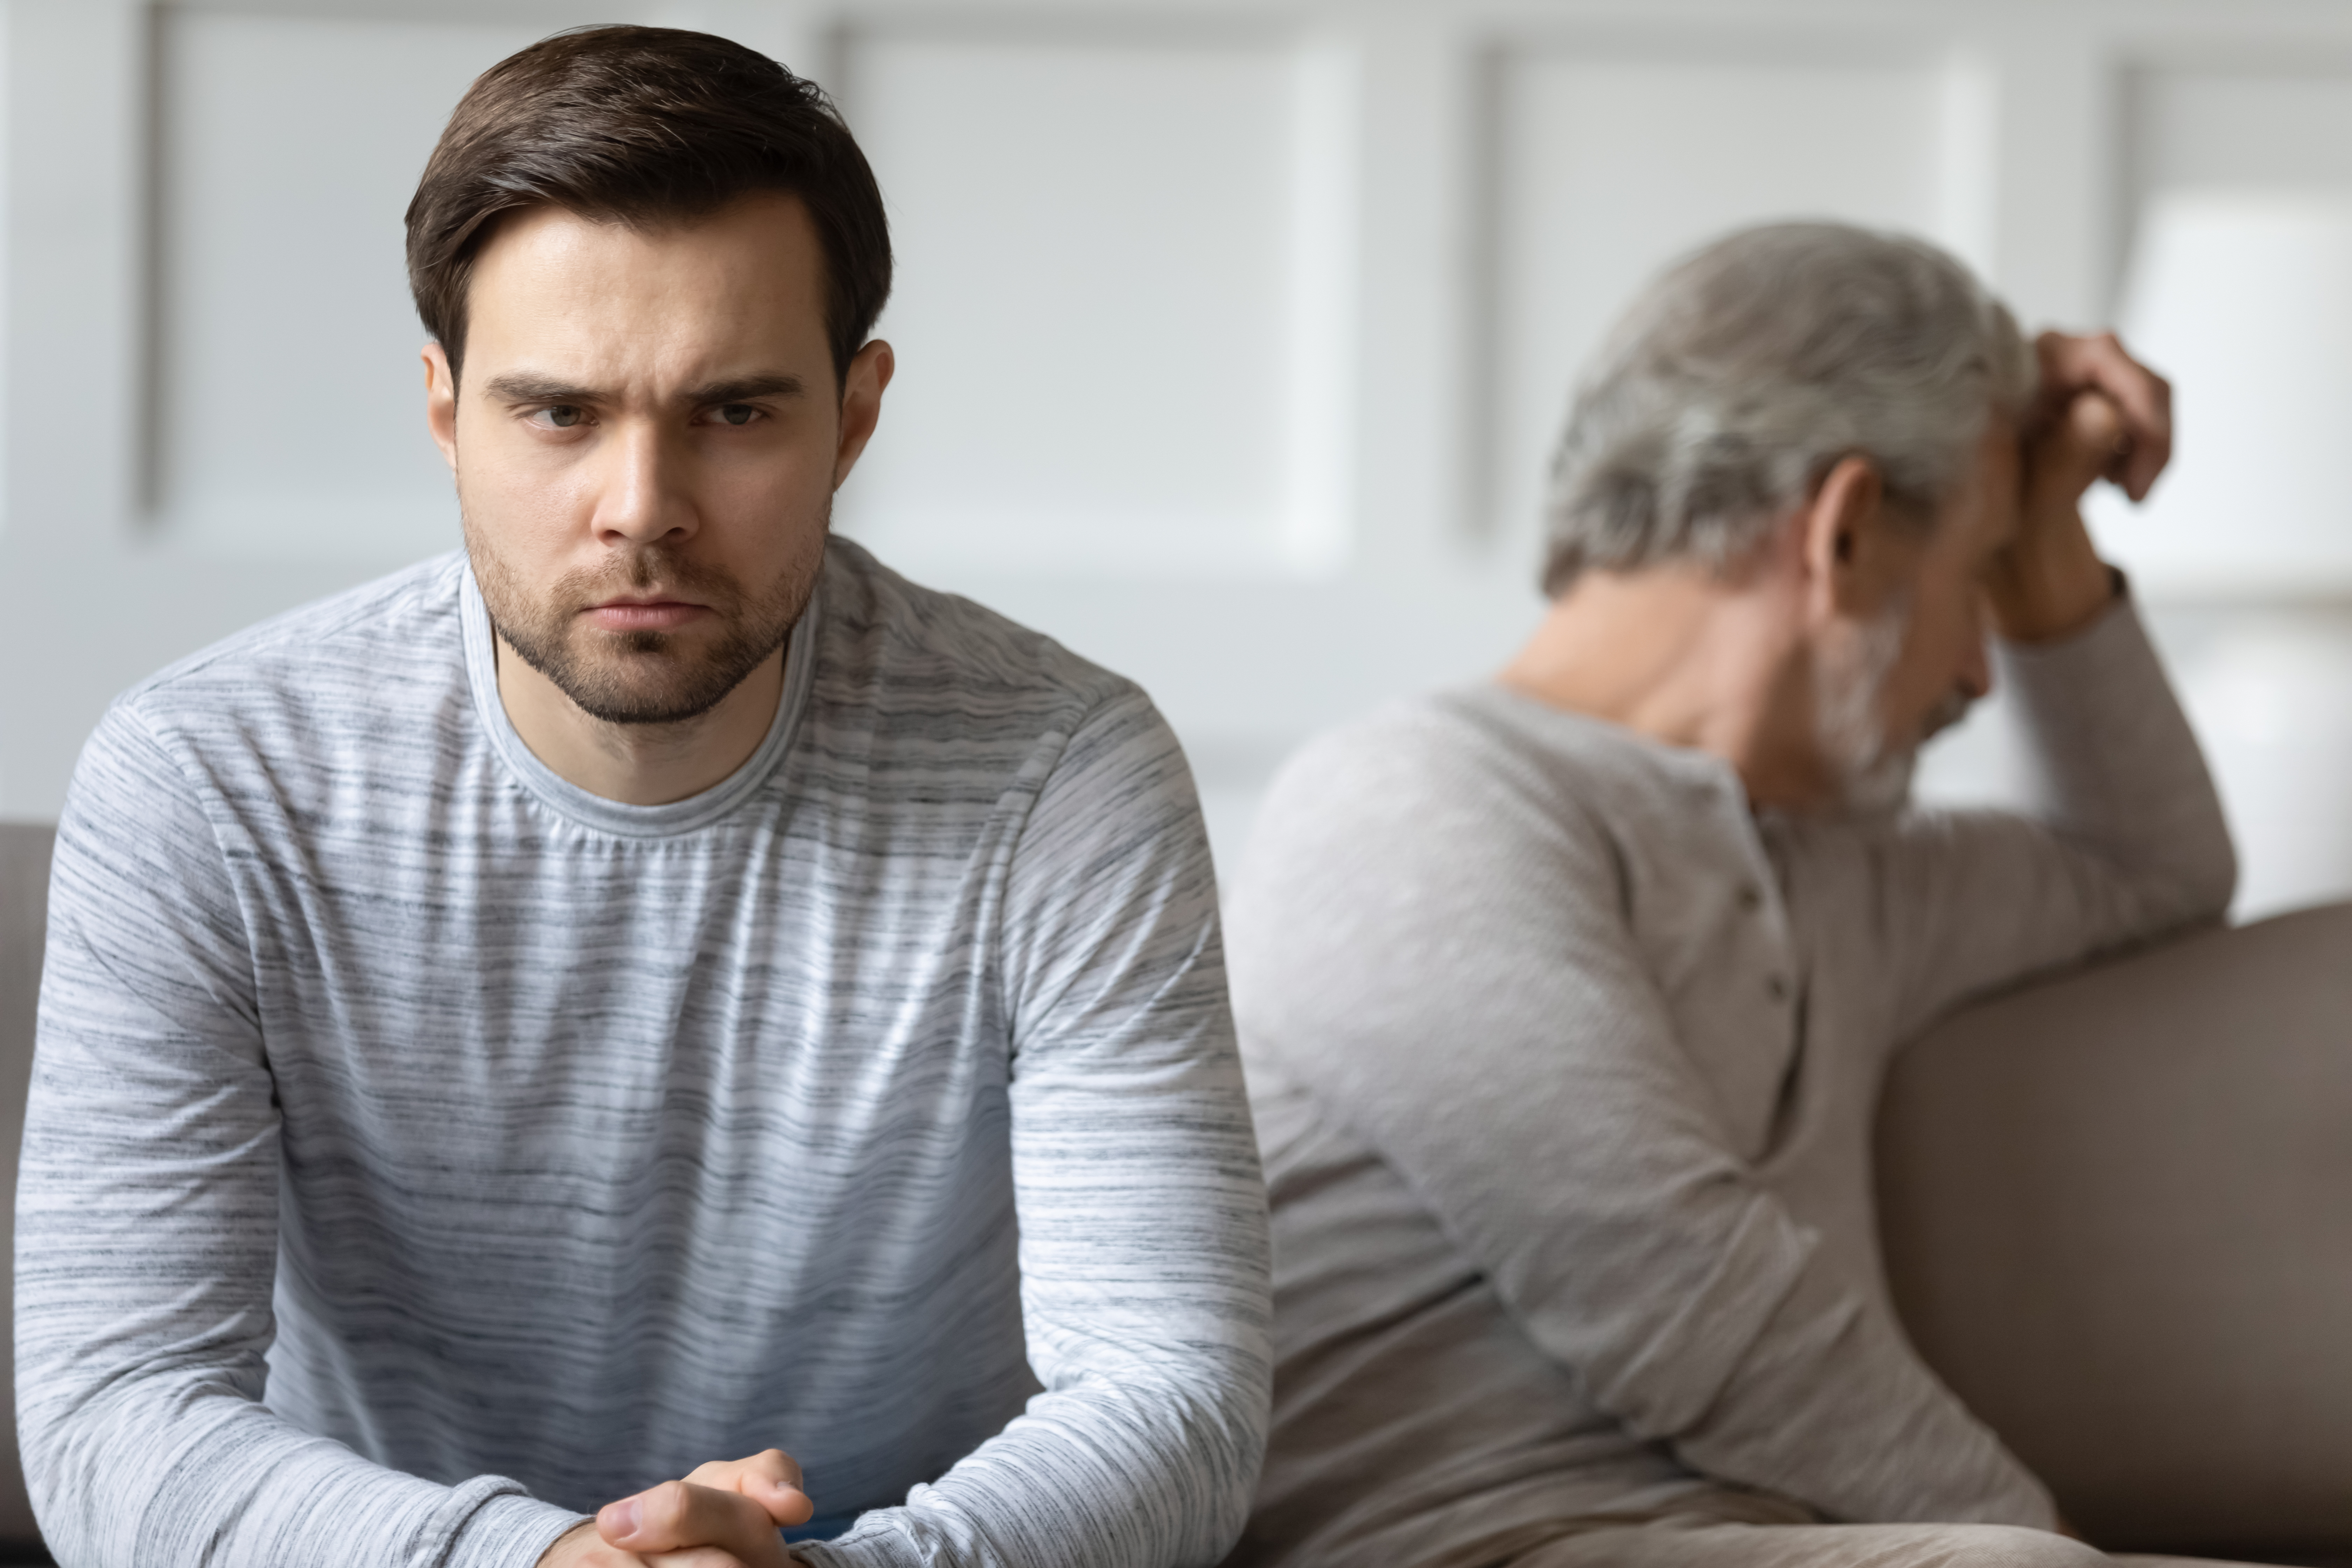 An upset man and an older man | Source: Shutterstock